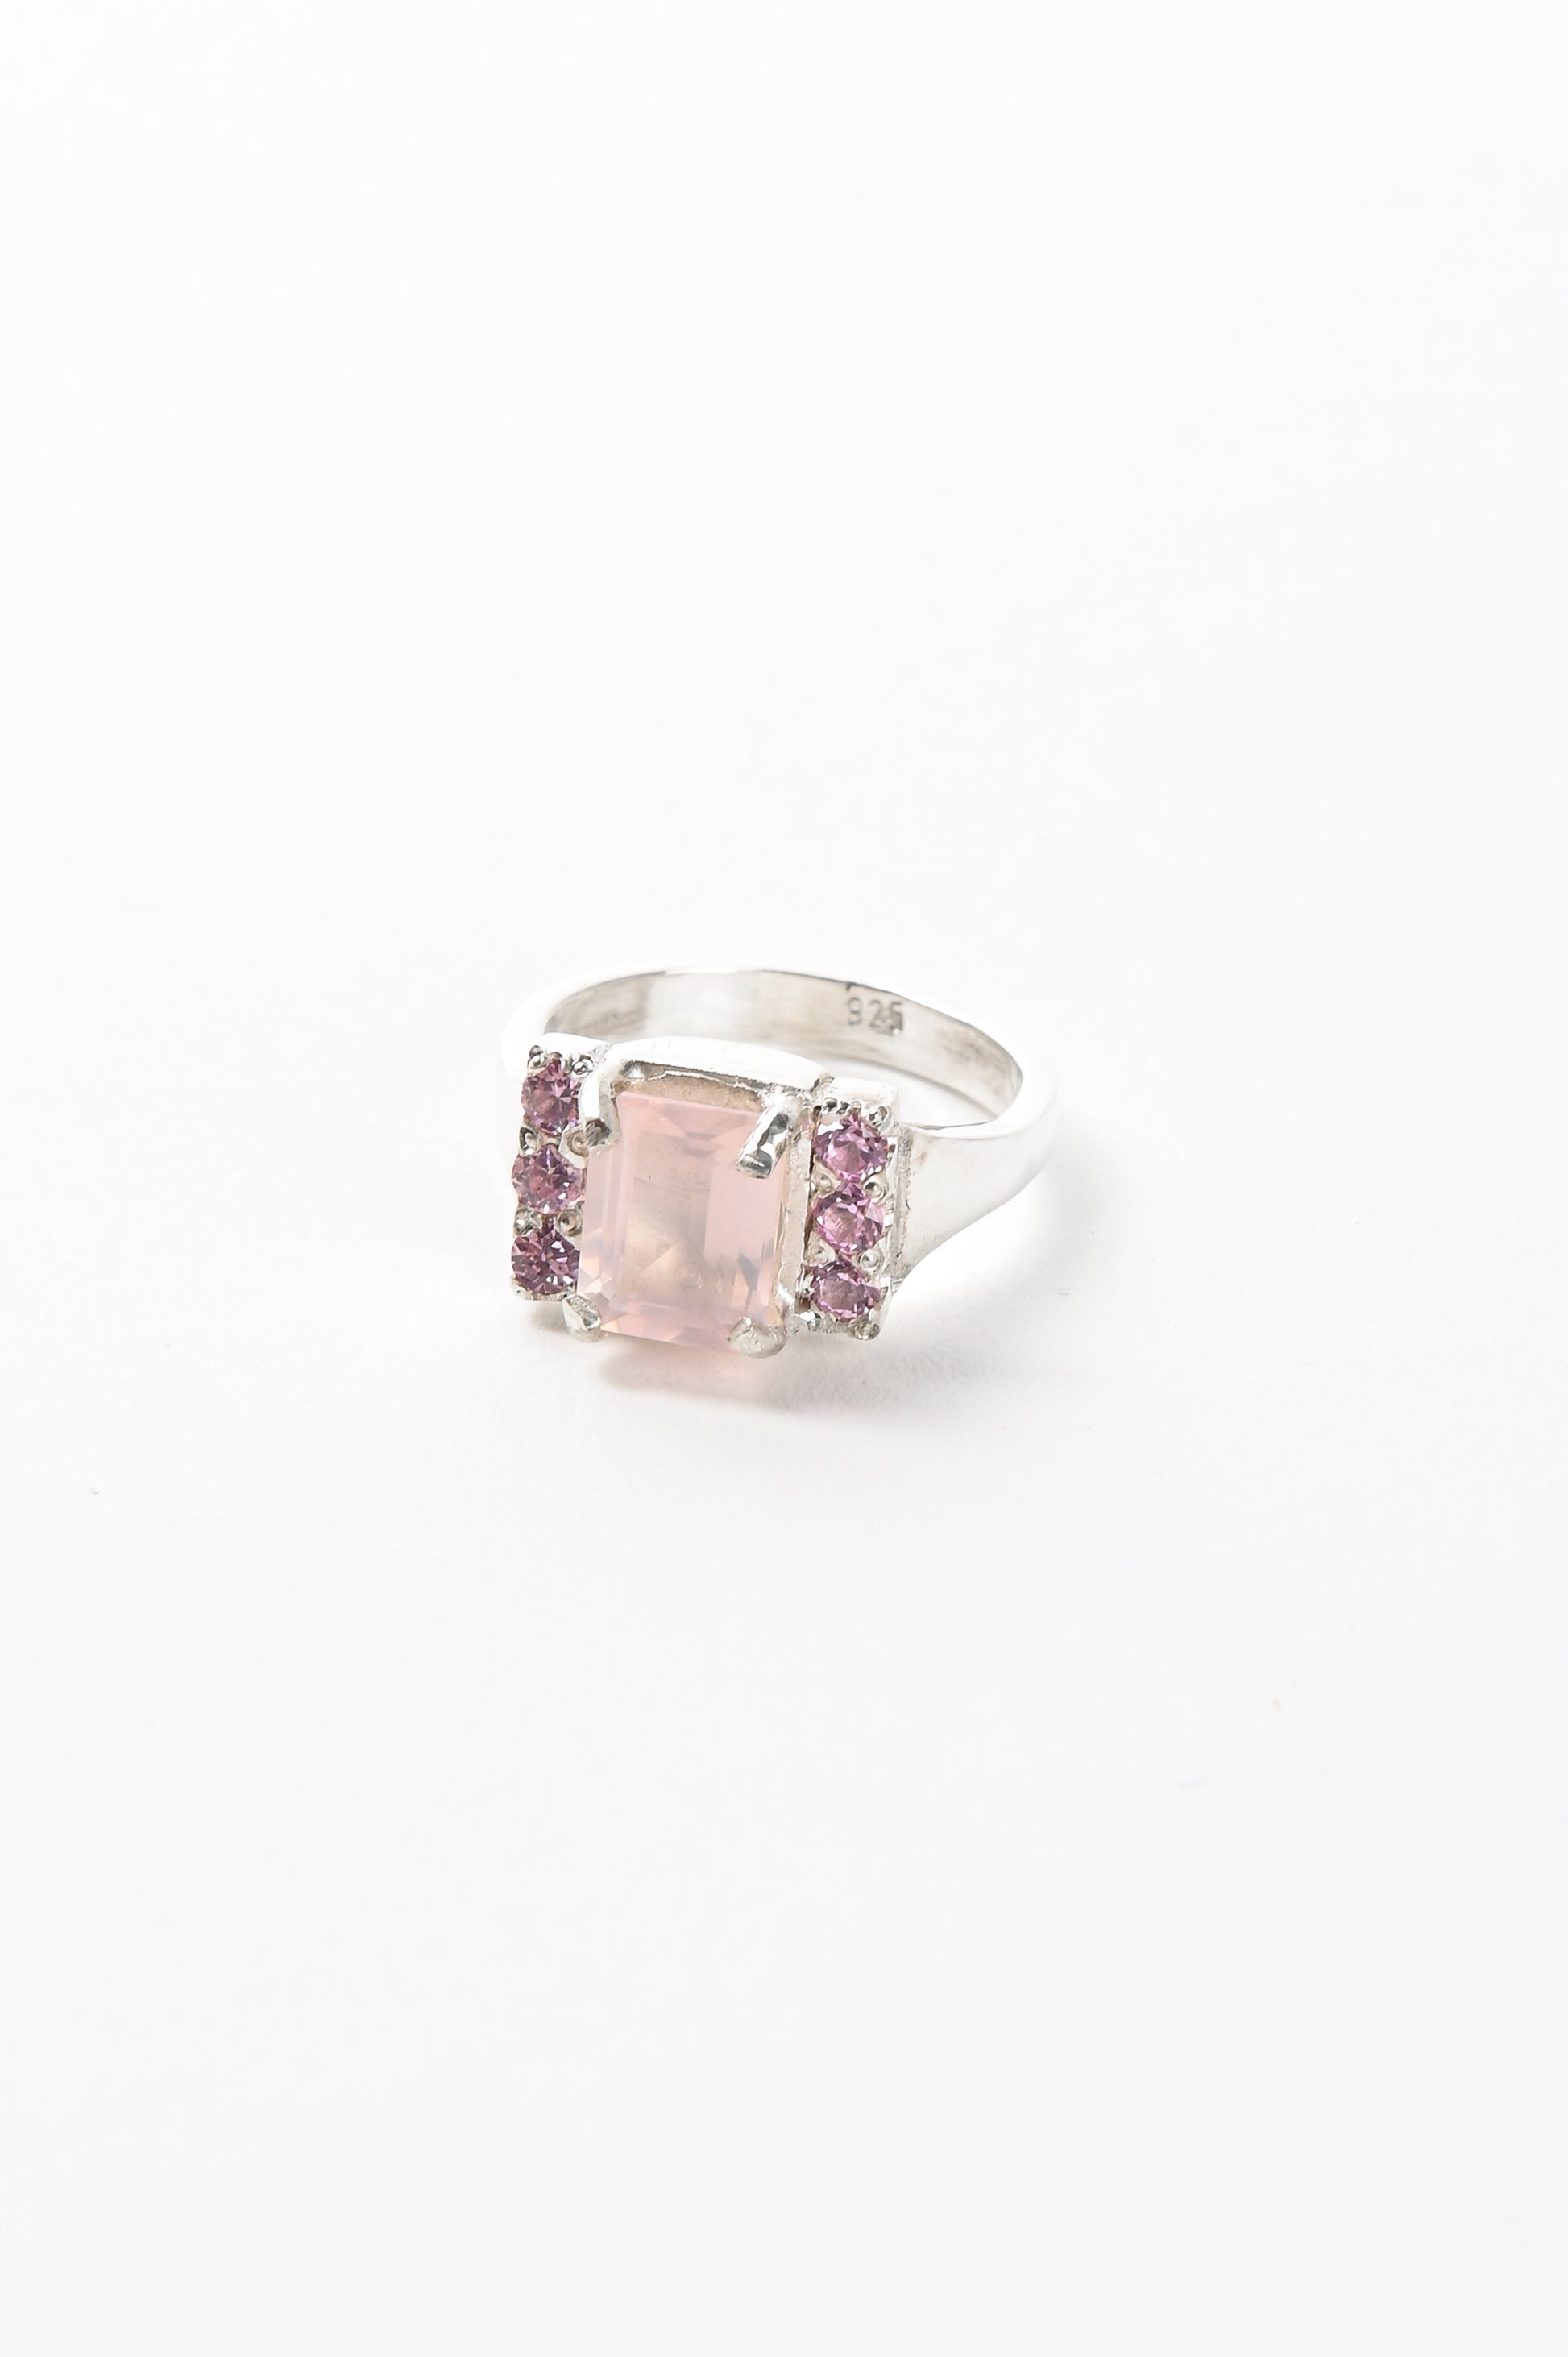 Oliver Thomas 'Priscilla' Ring With Rose Quartz